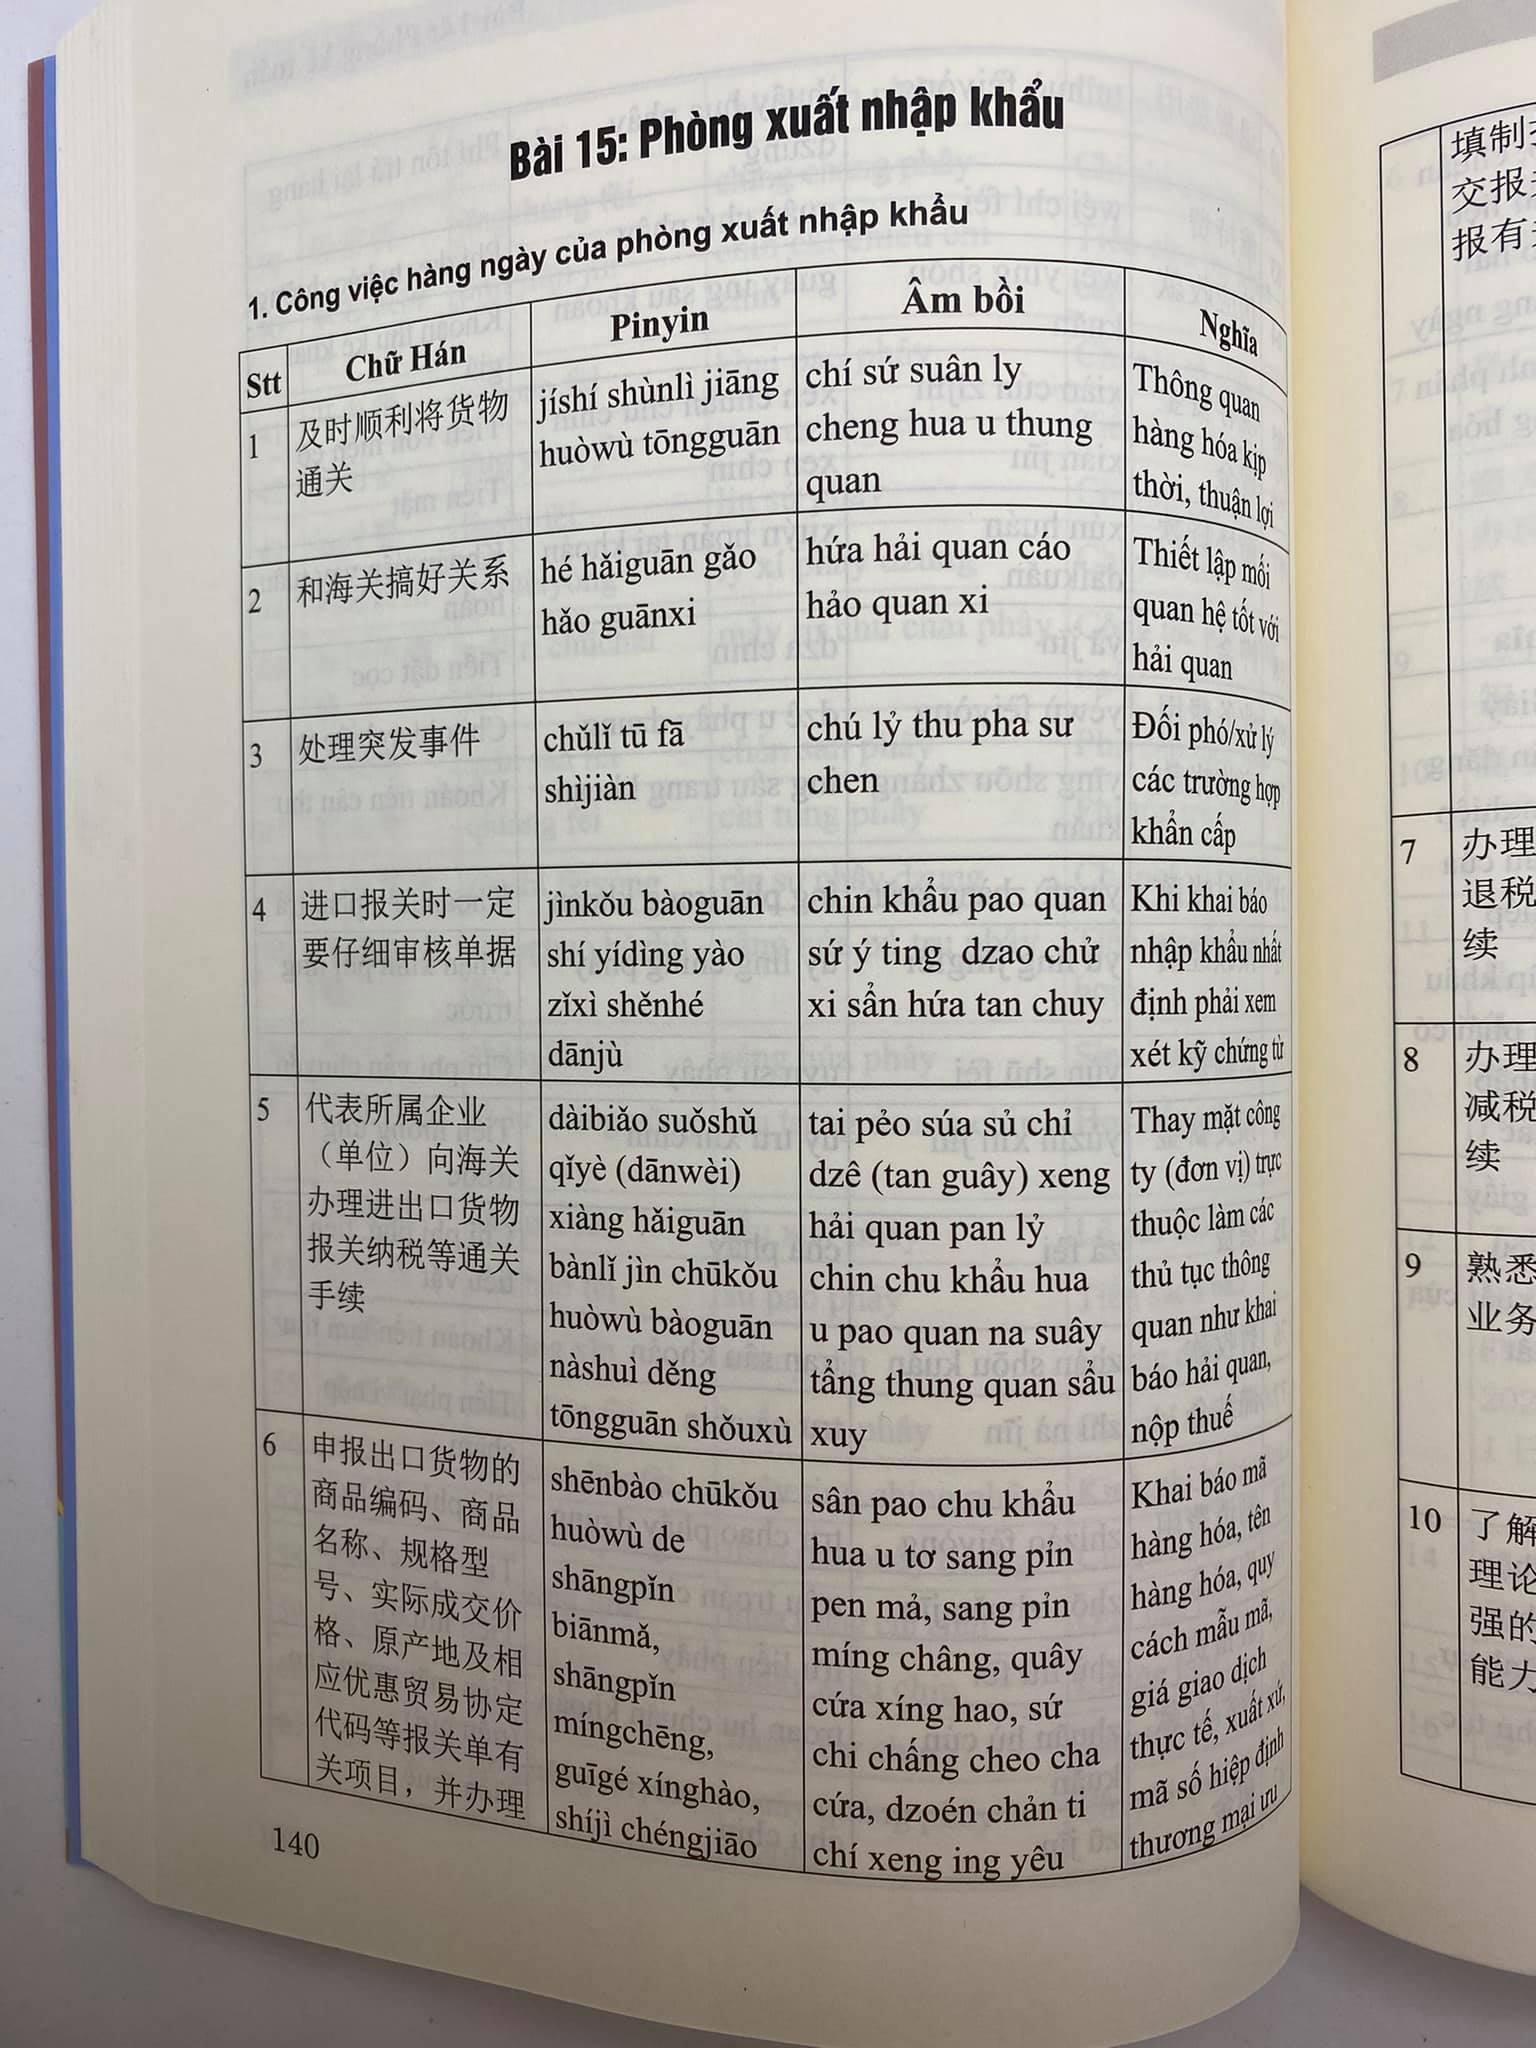 Sách - Combo 2 sách Siêu trí nhớ 1000 chữ hán tập 3 và Tự học tiếng Trung văn phòng công xưởng ngành may mặc, giày da, gổ, kế toán, xuất nhập khẩu, điện tử,... có pinyin,âm bồi, mp3 nghe+DVD tài liệu